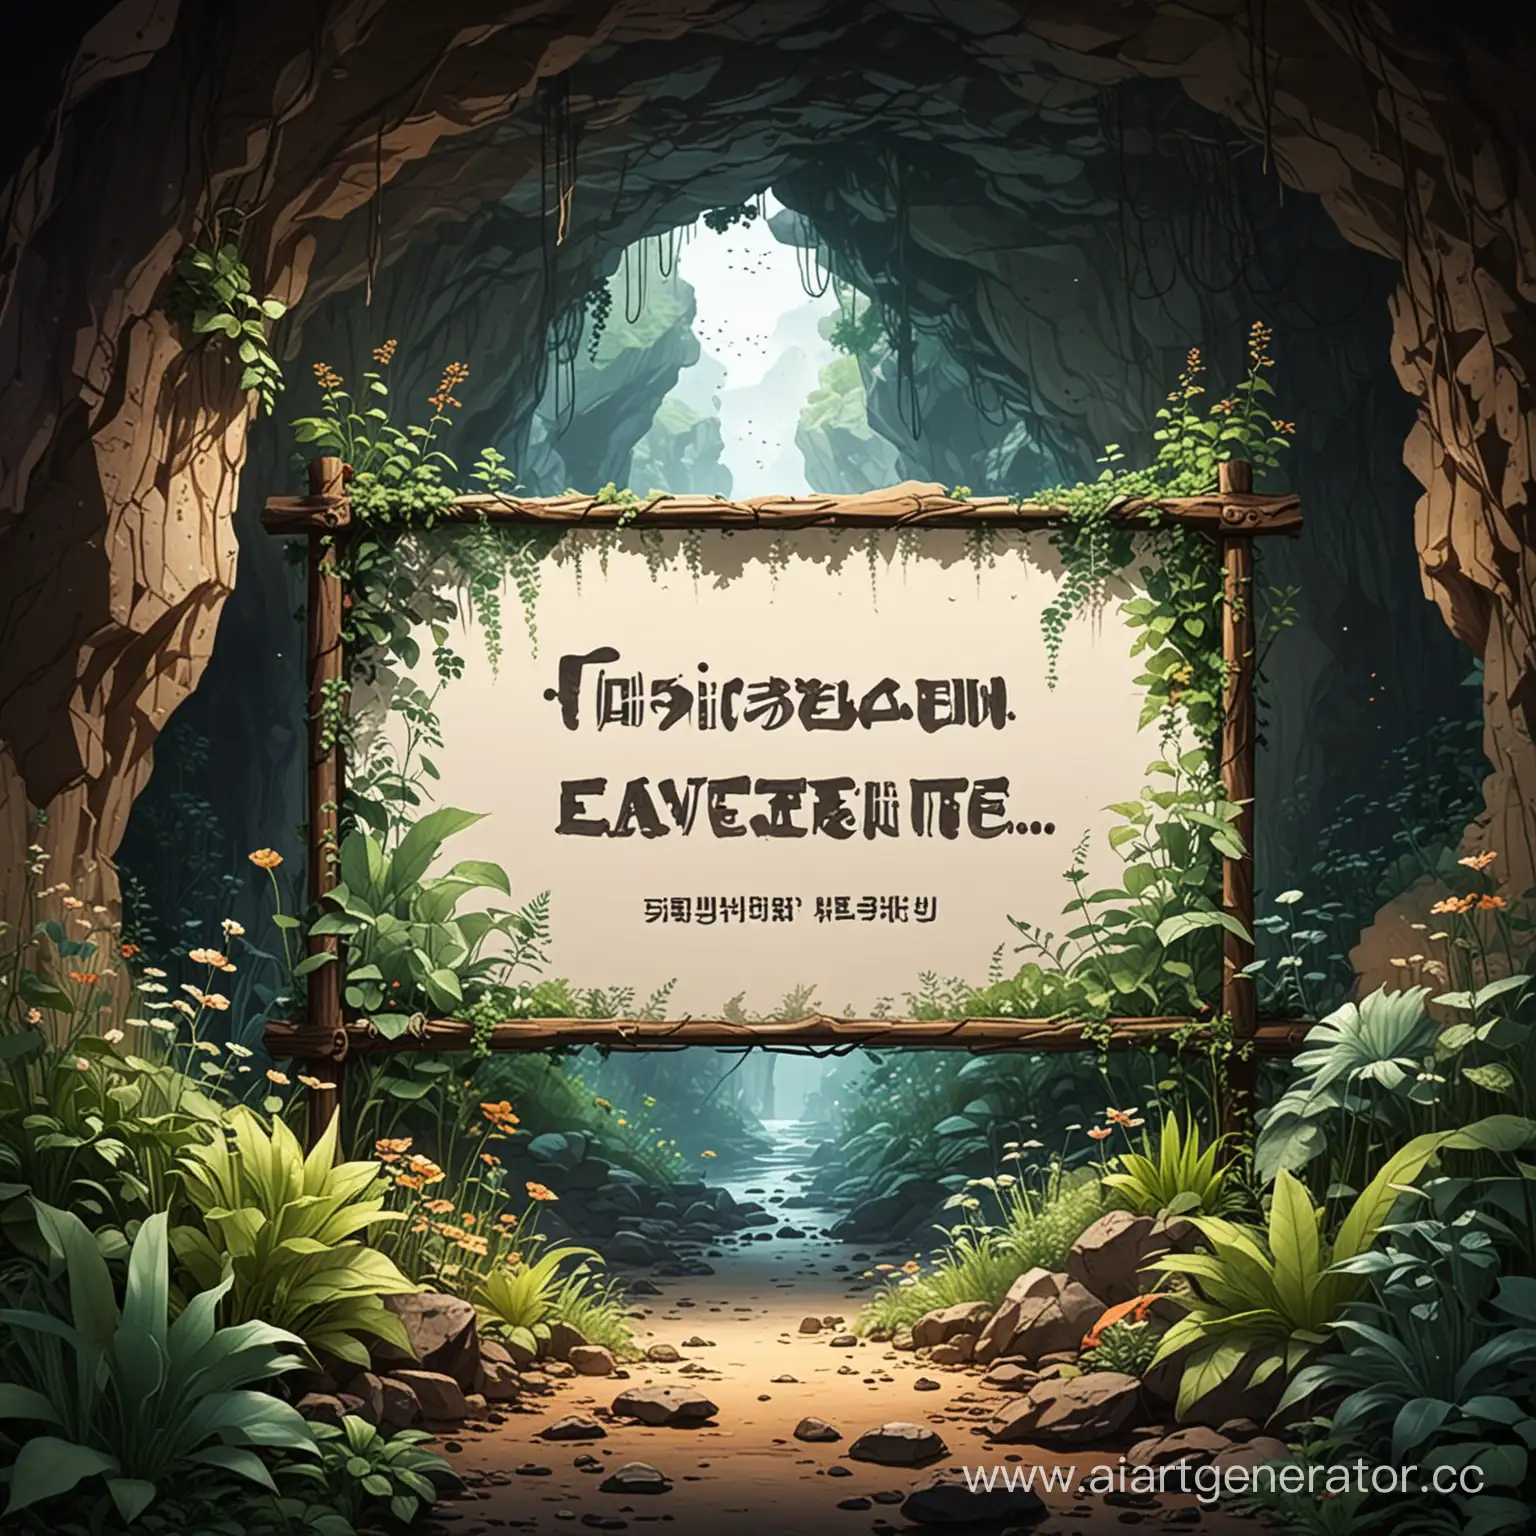 Табличка в пещере полной растений, без надписи, в анимешном стиле